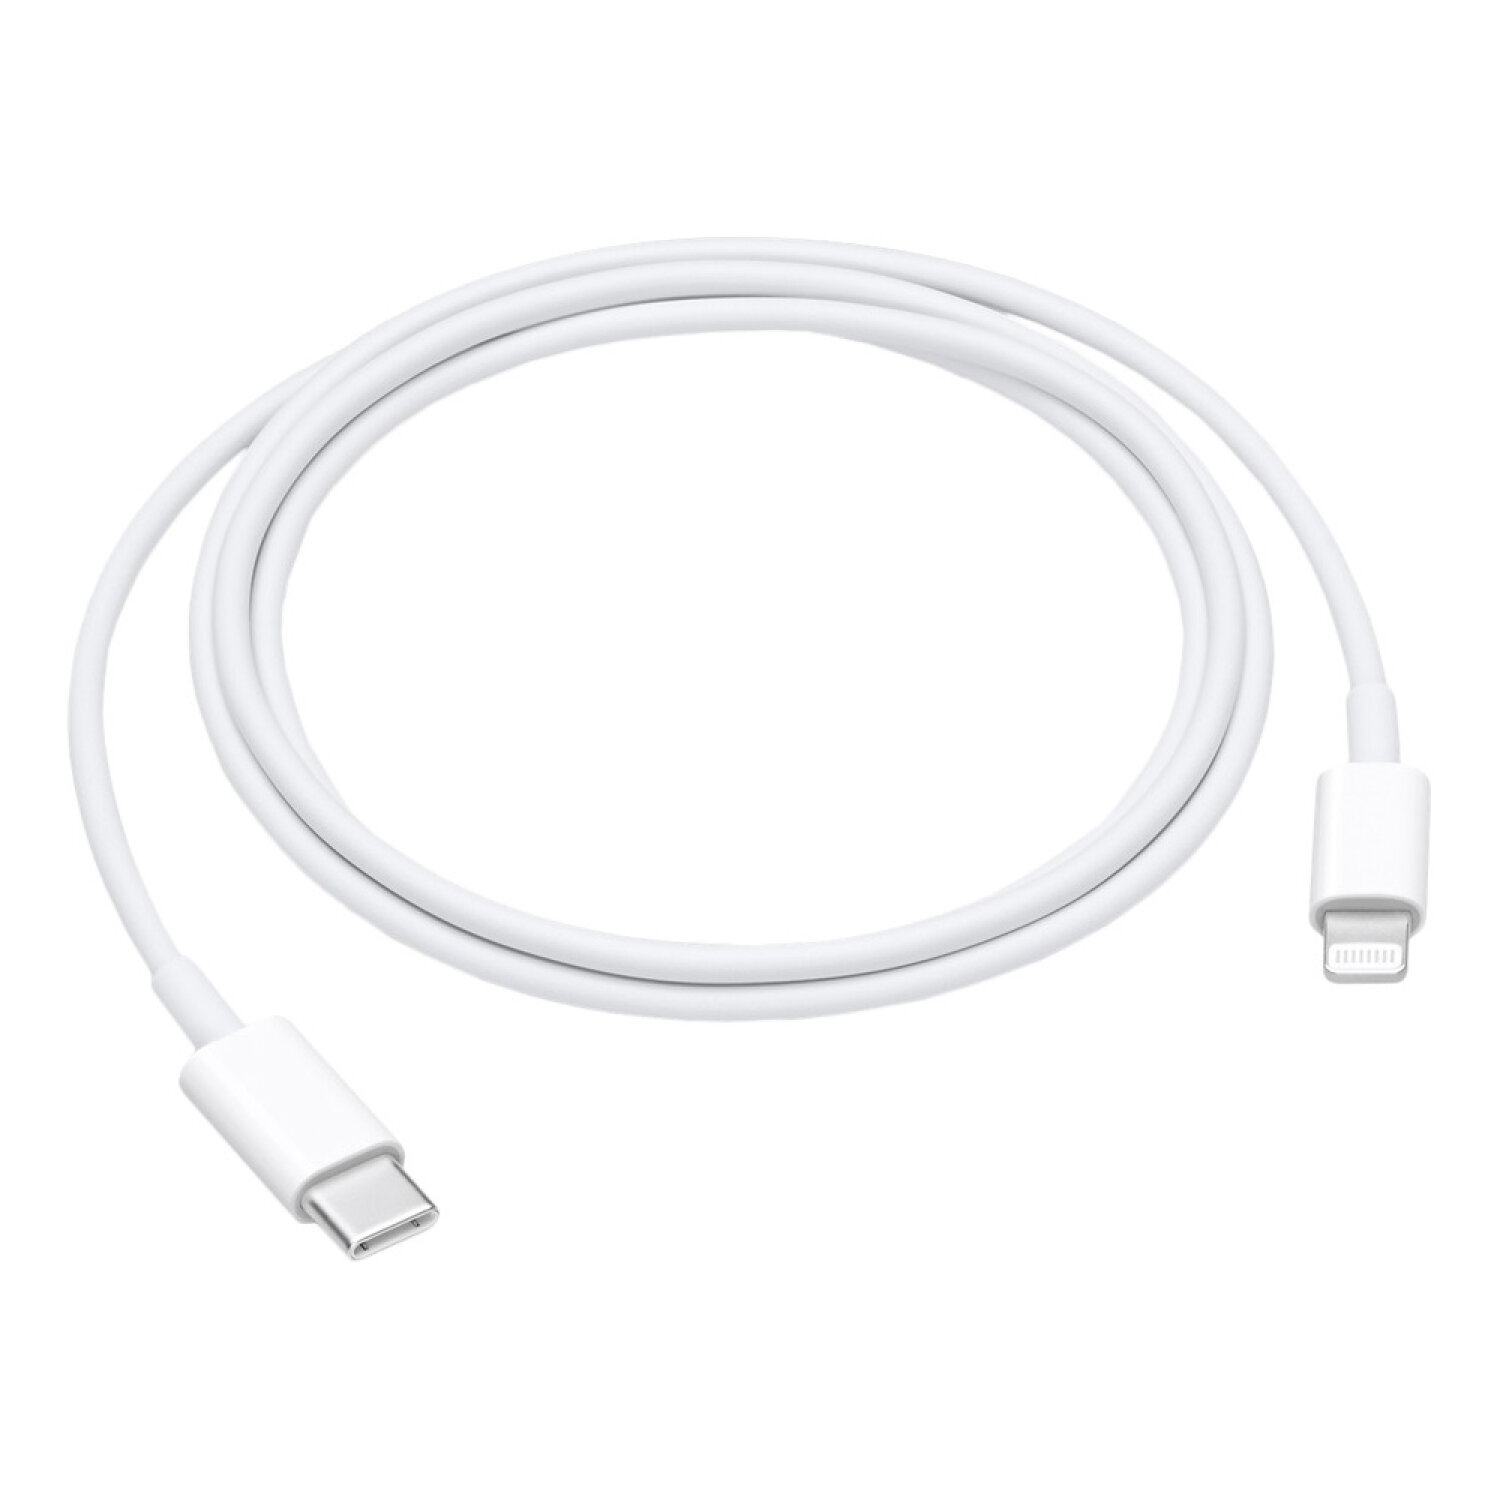 Зарядный кабель USB-C to Lightning для iPod, iPhone, iPad, 1 м, белый